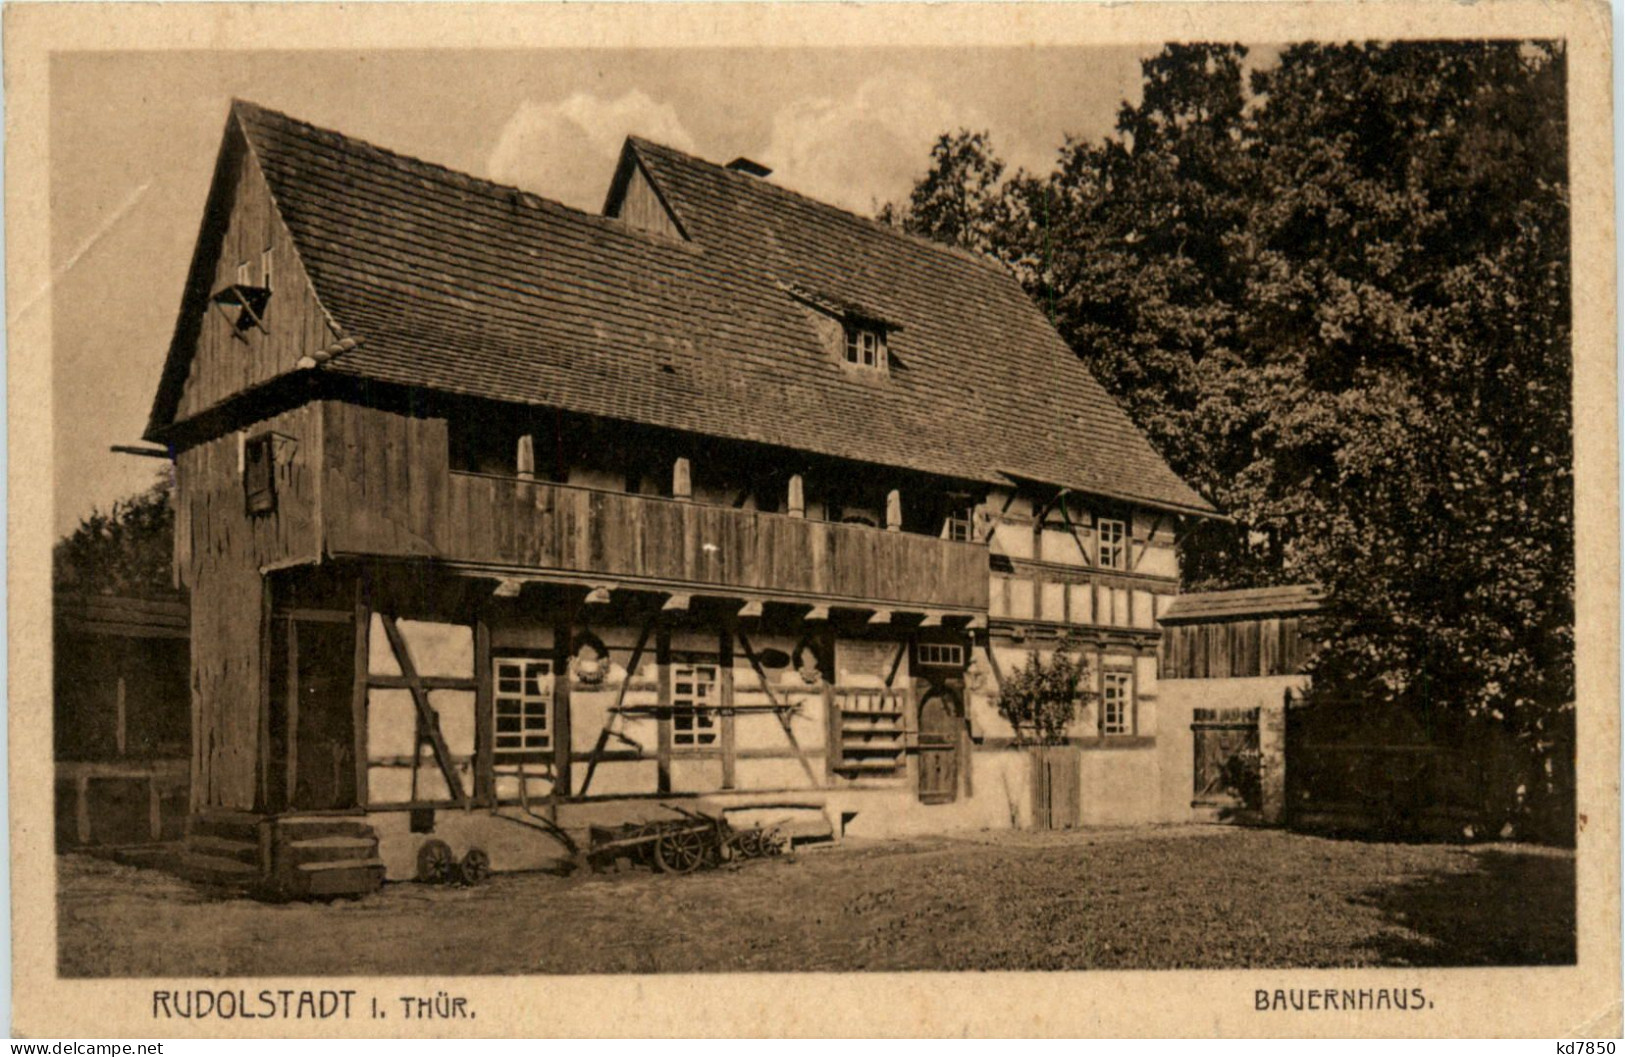 Rudolstadt - Bauernhaus - Rudolstadt